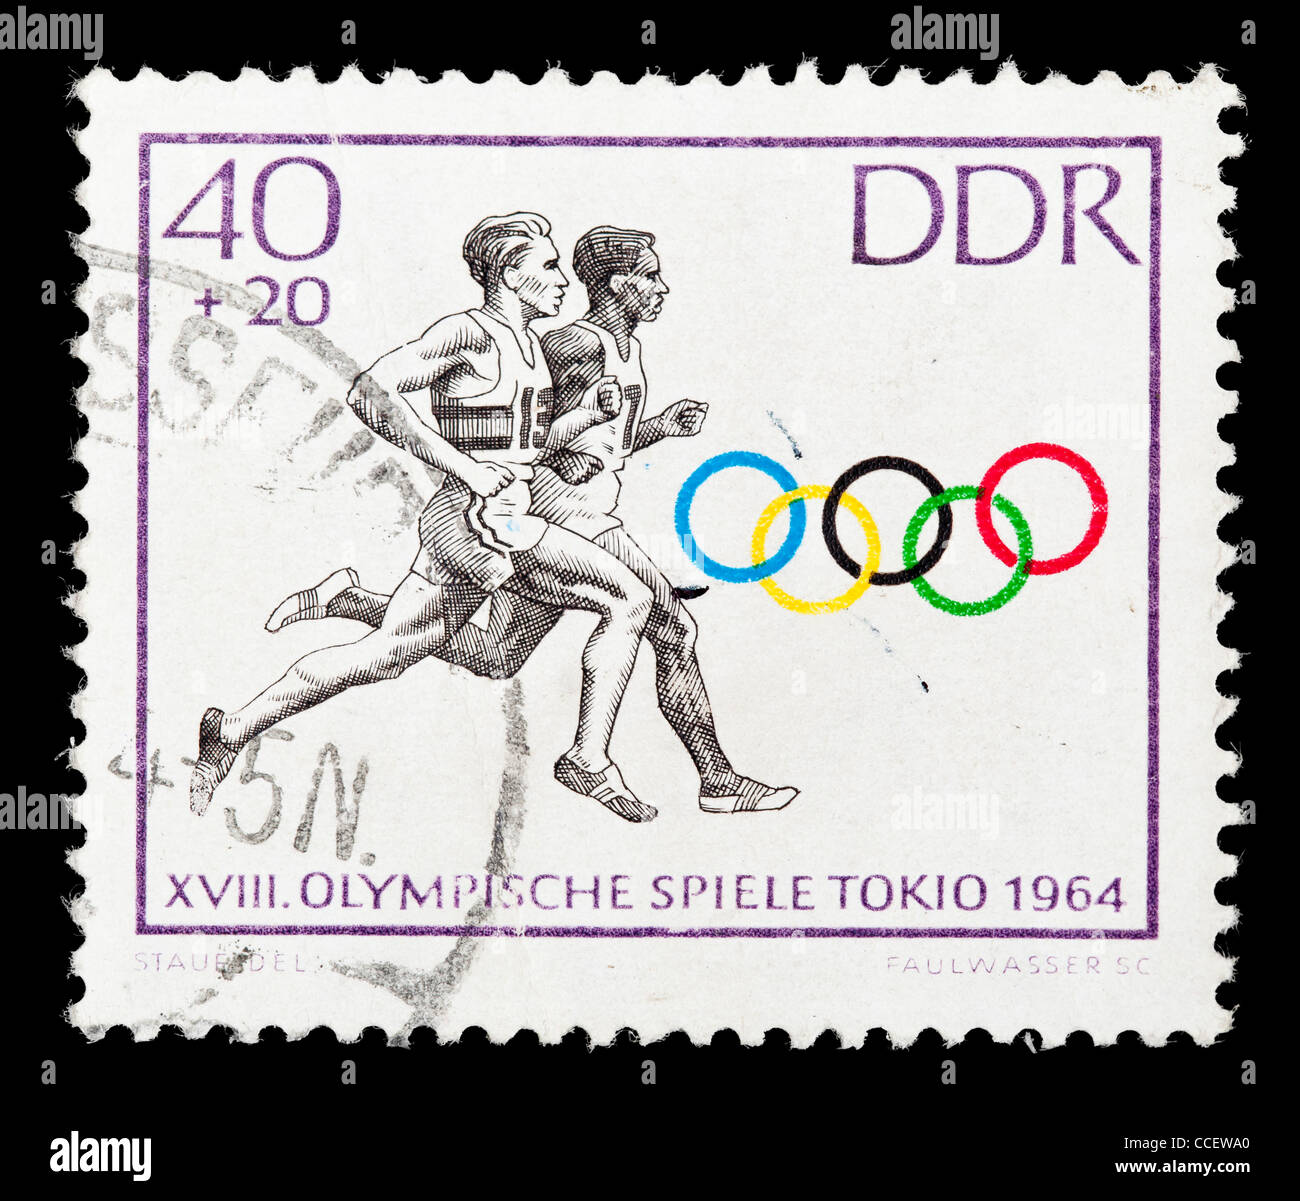 Sello: XVIII. Los Juegos Olímpicos de 1964, DDR, estampado Foto de stock